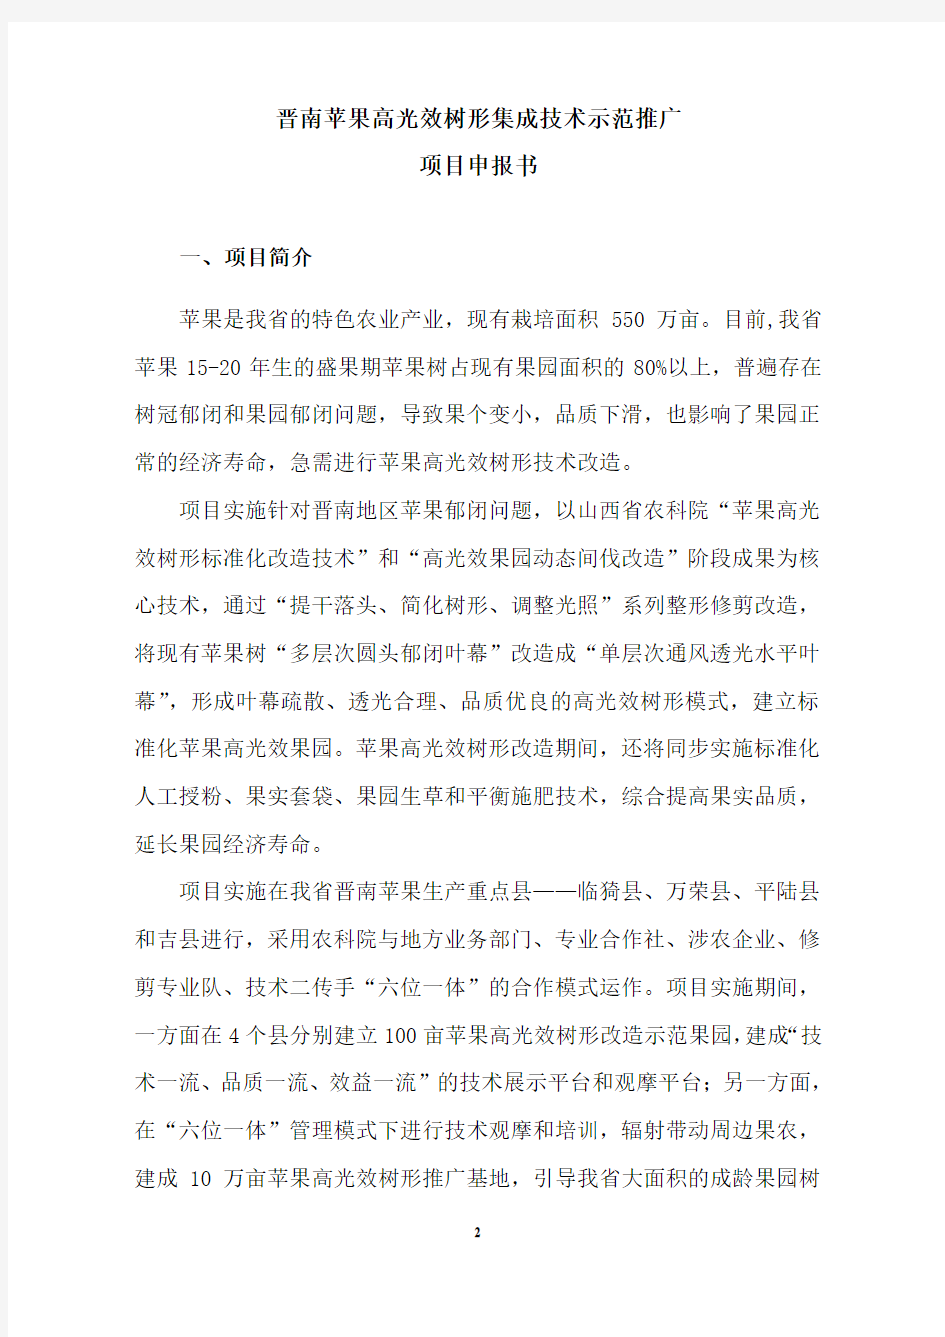 (20140402)牛自勉-%20晋南苹果高光效树形集成技术示范推广